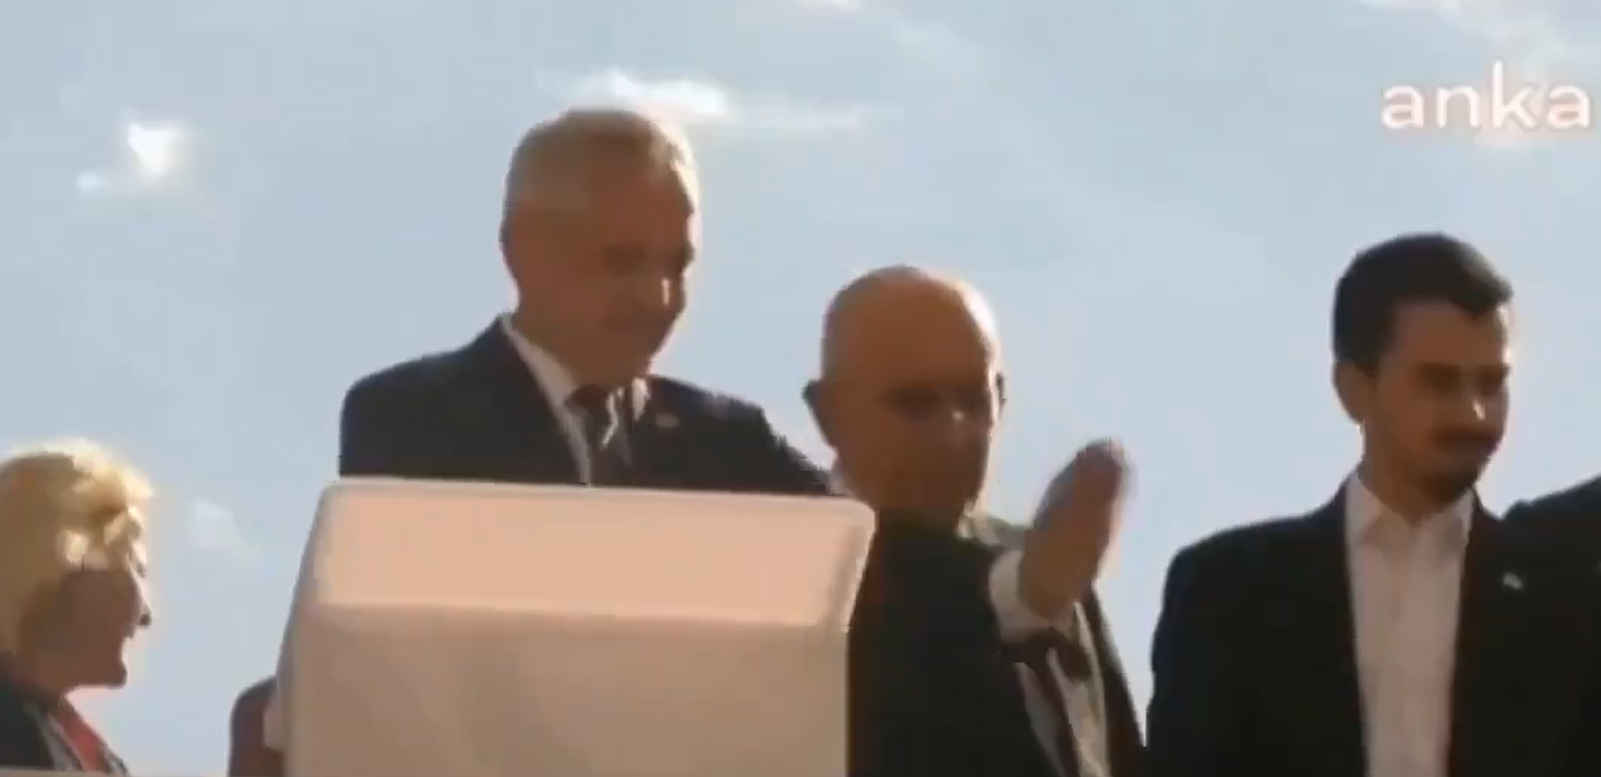 "اليوم الأذان وغداً العلم".. غضب واسع من رئيس بلدية تركي فيلي غوندوز شاهين أزعجه صوت الأذان